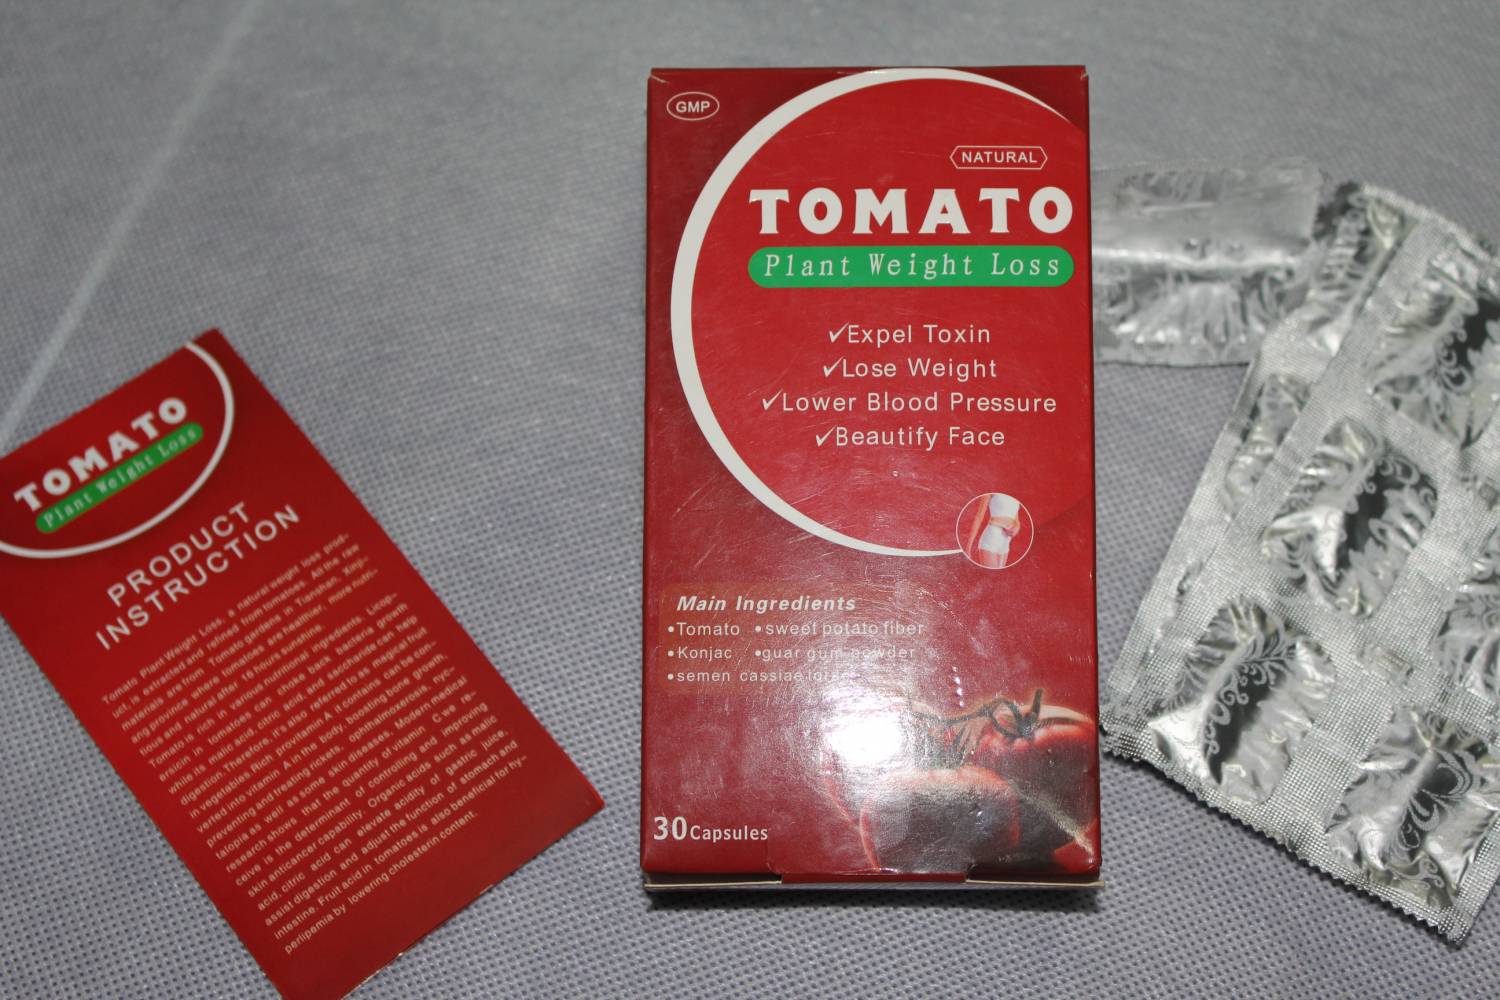 tomato pastile de slabit in farmacii